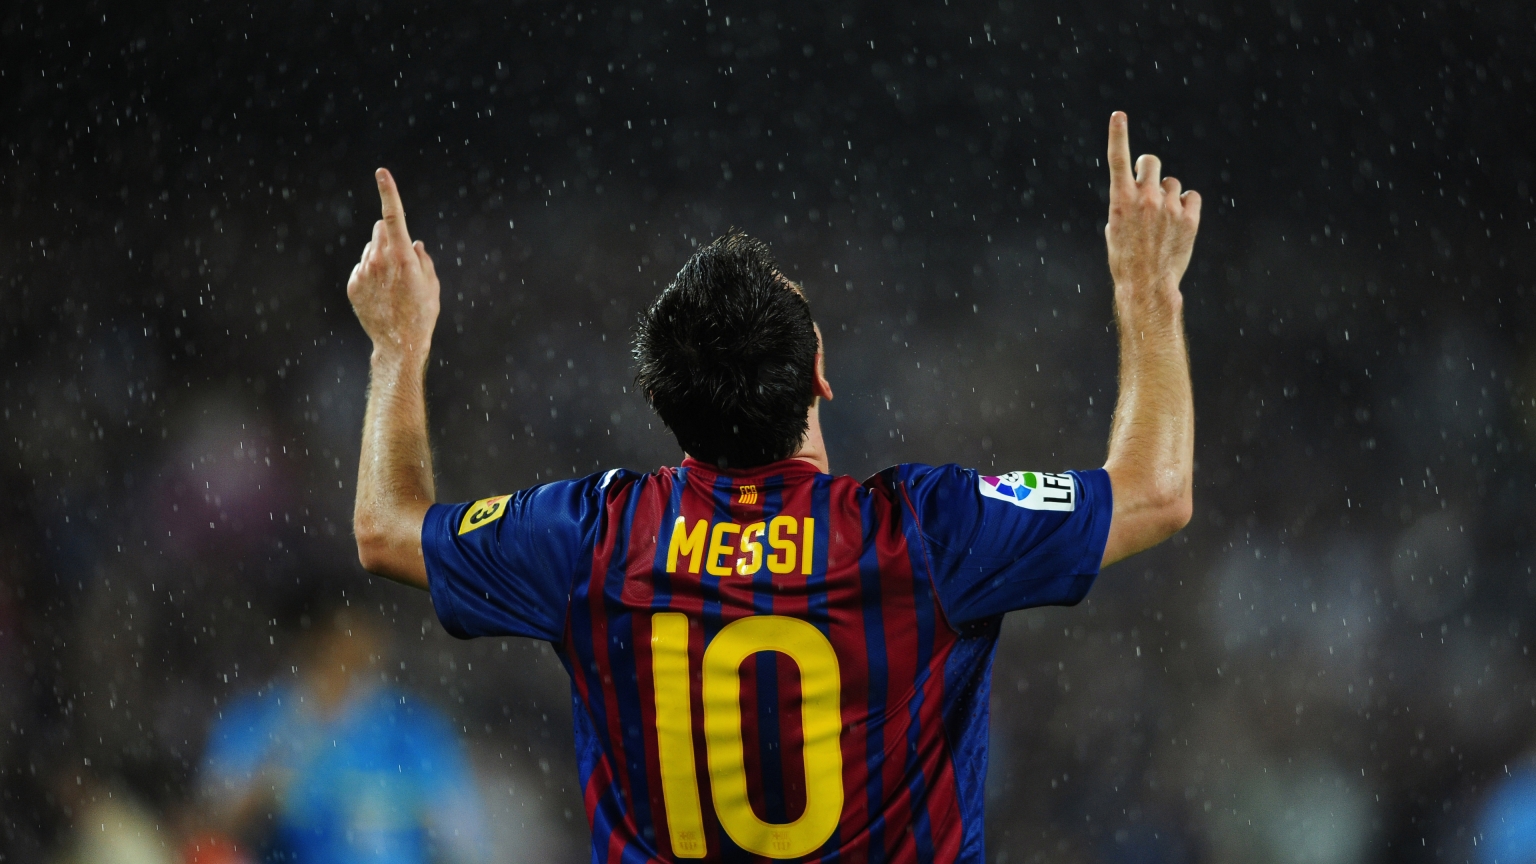 Lionel Messi in Rain for 1536 x 864 HDTV resolution